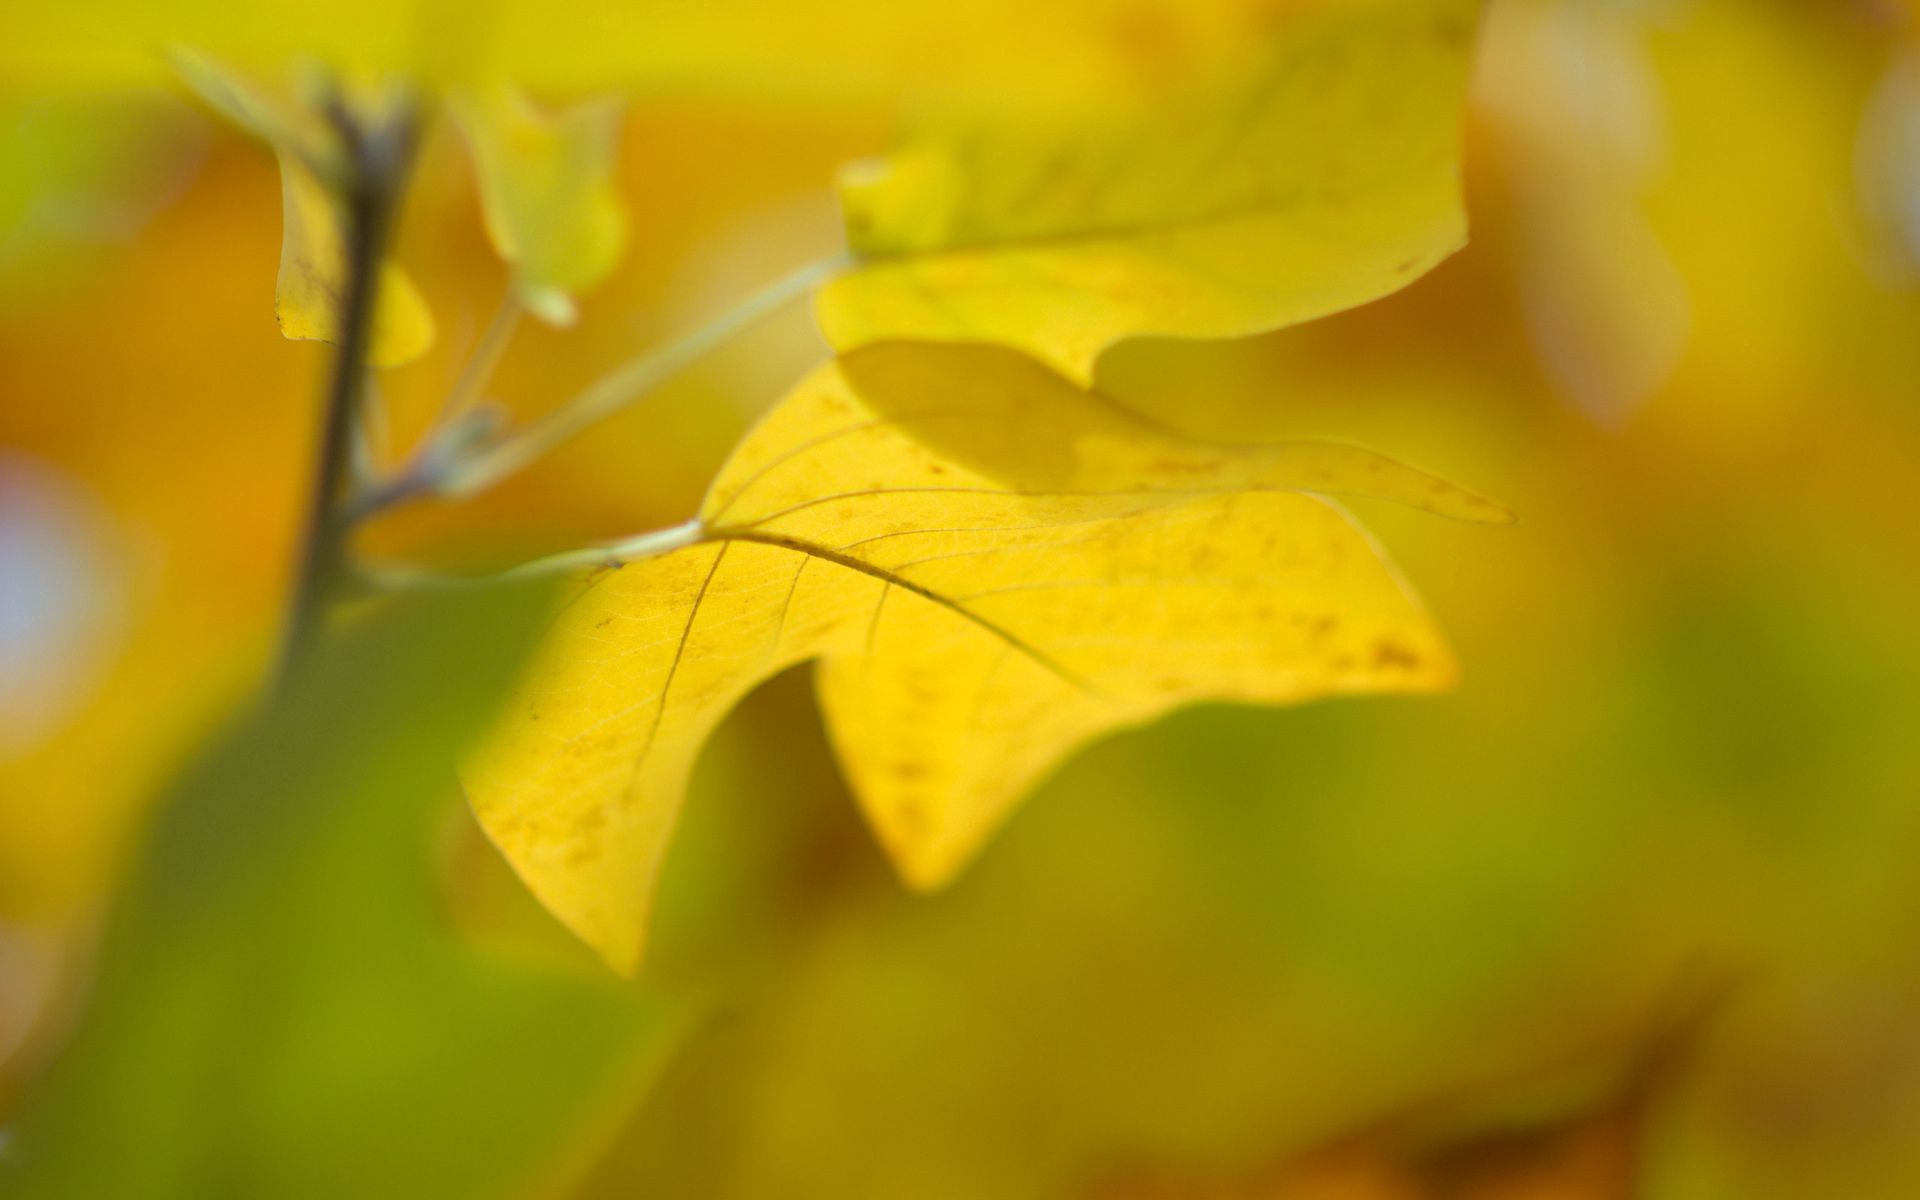 Скачать обои бесплатно Желтый, Лист, Природа, Фон, Осень картинка на рабочий стол ПК